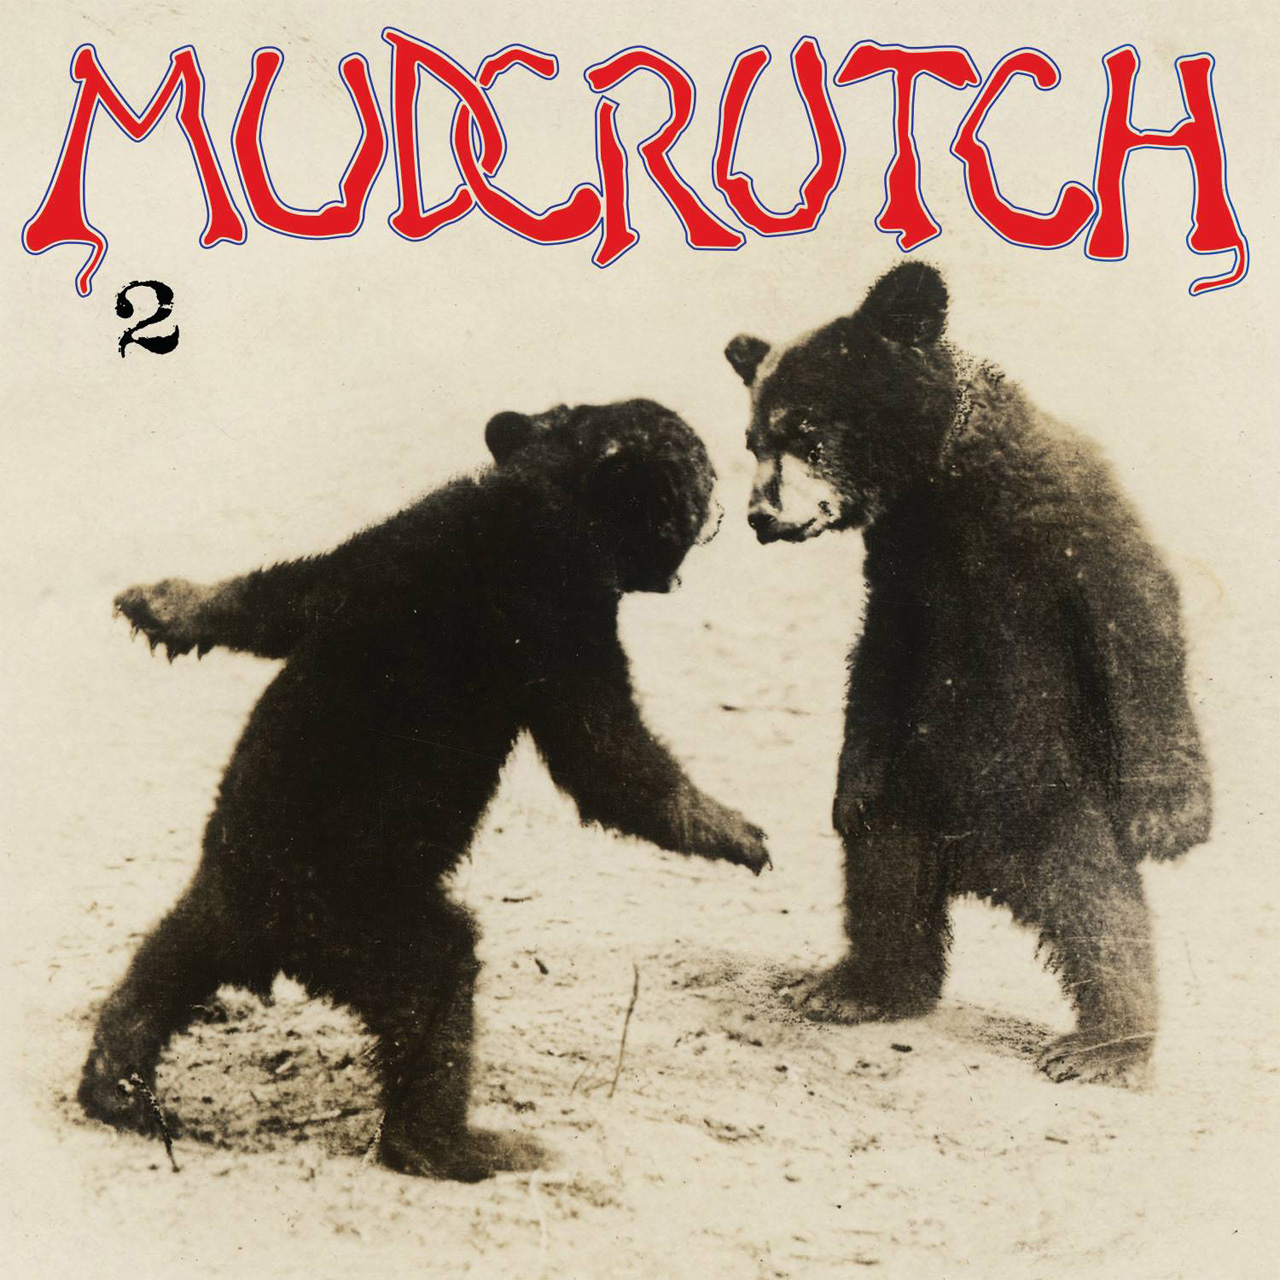 mudcrutch2